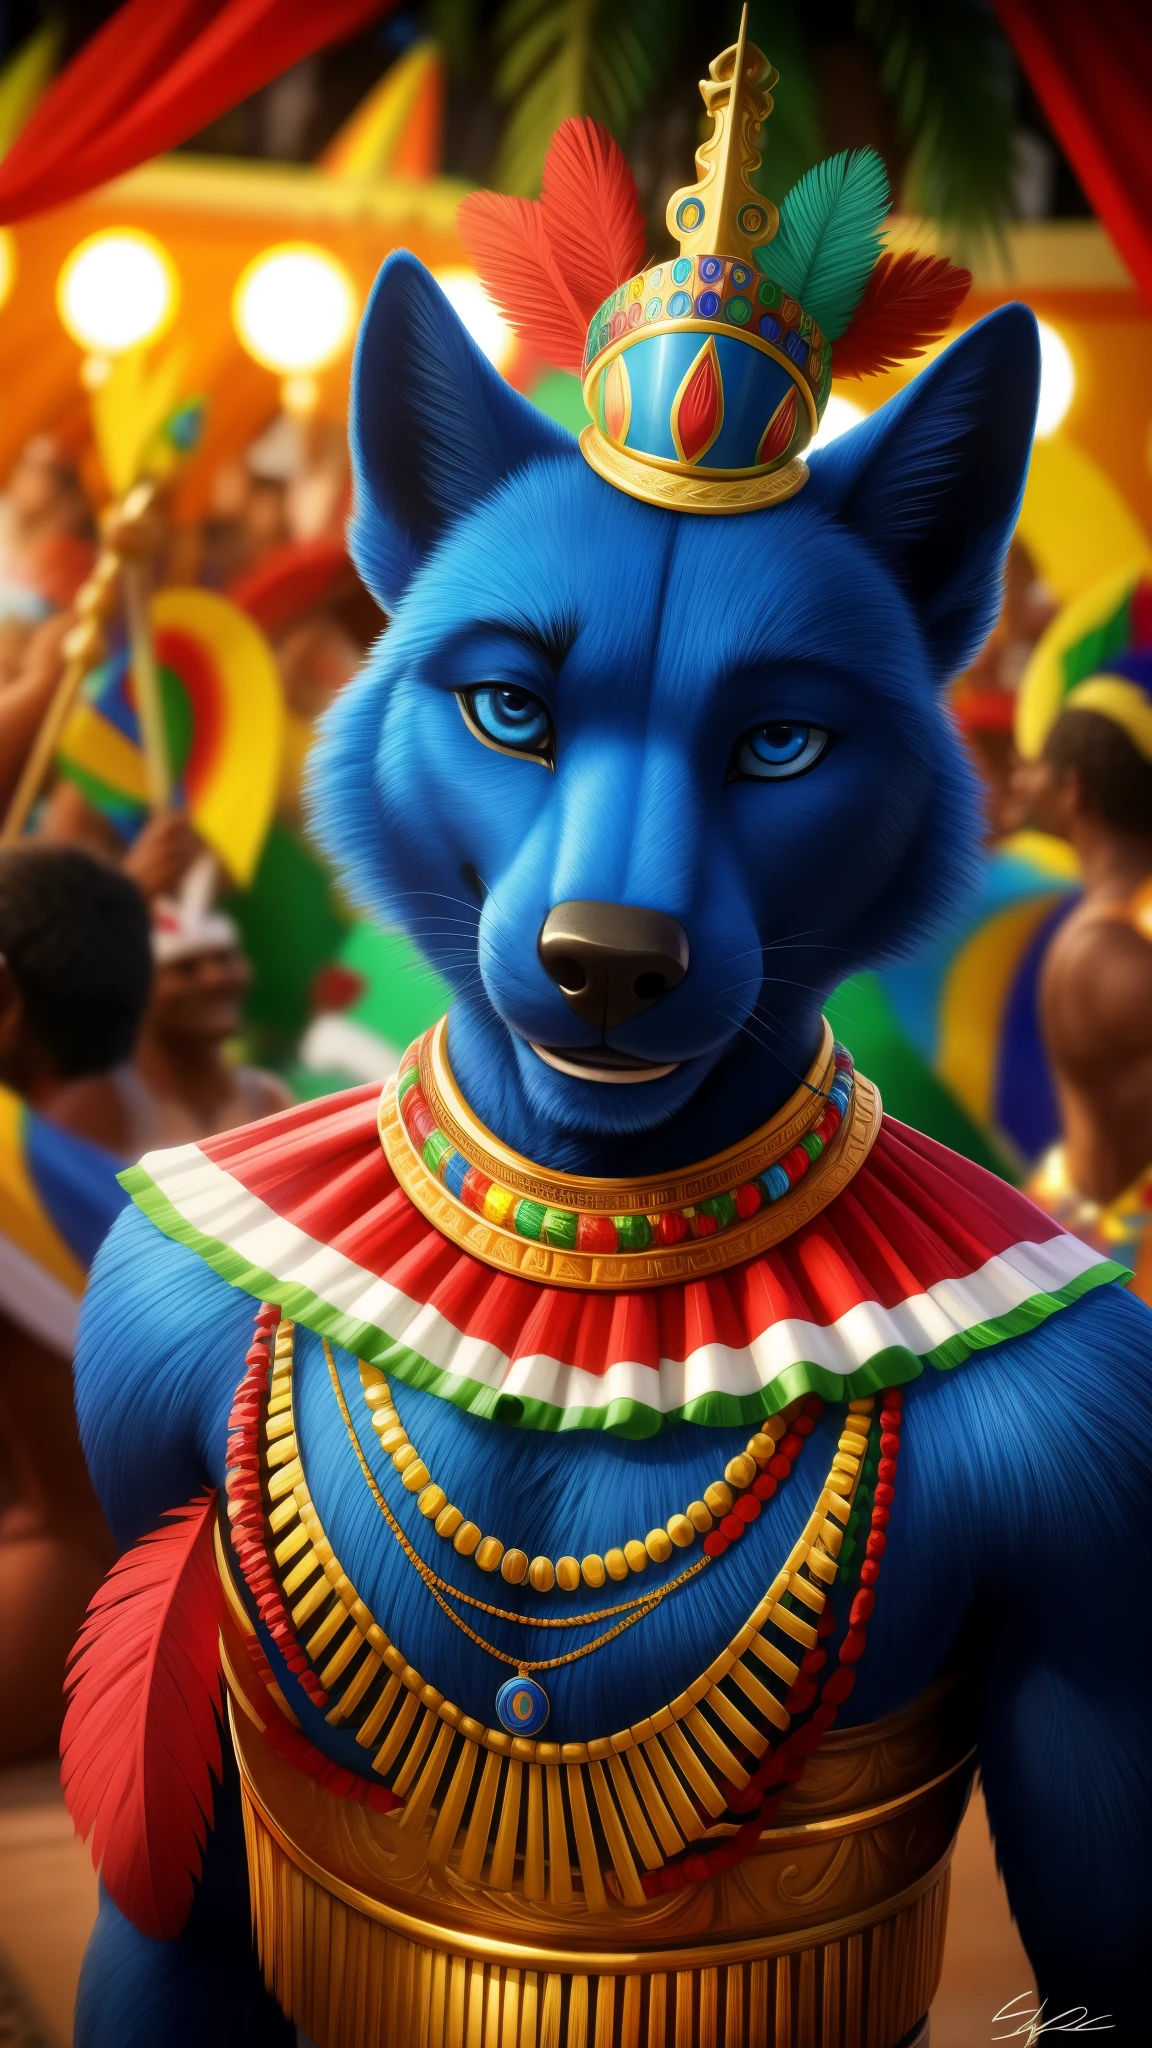 Peludo azul oscuro con un traje de estilo brasileño, ojos azules, un fondo realista de Río de Janeiro jugando pagode. Acento brasileño ahora un carnaval en el fondo para el espectador, una sonrisa genial, visual único y original HDR 99K.